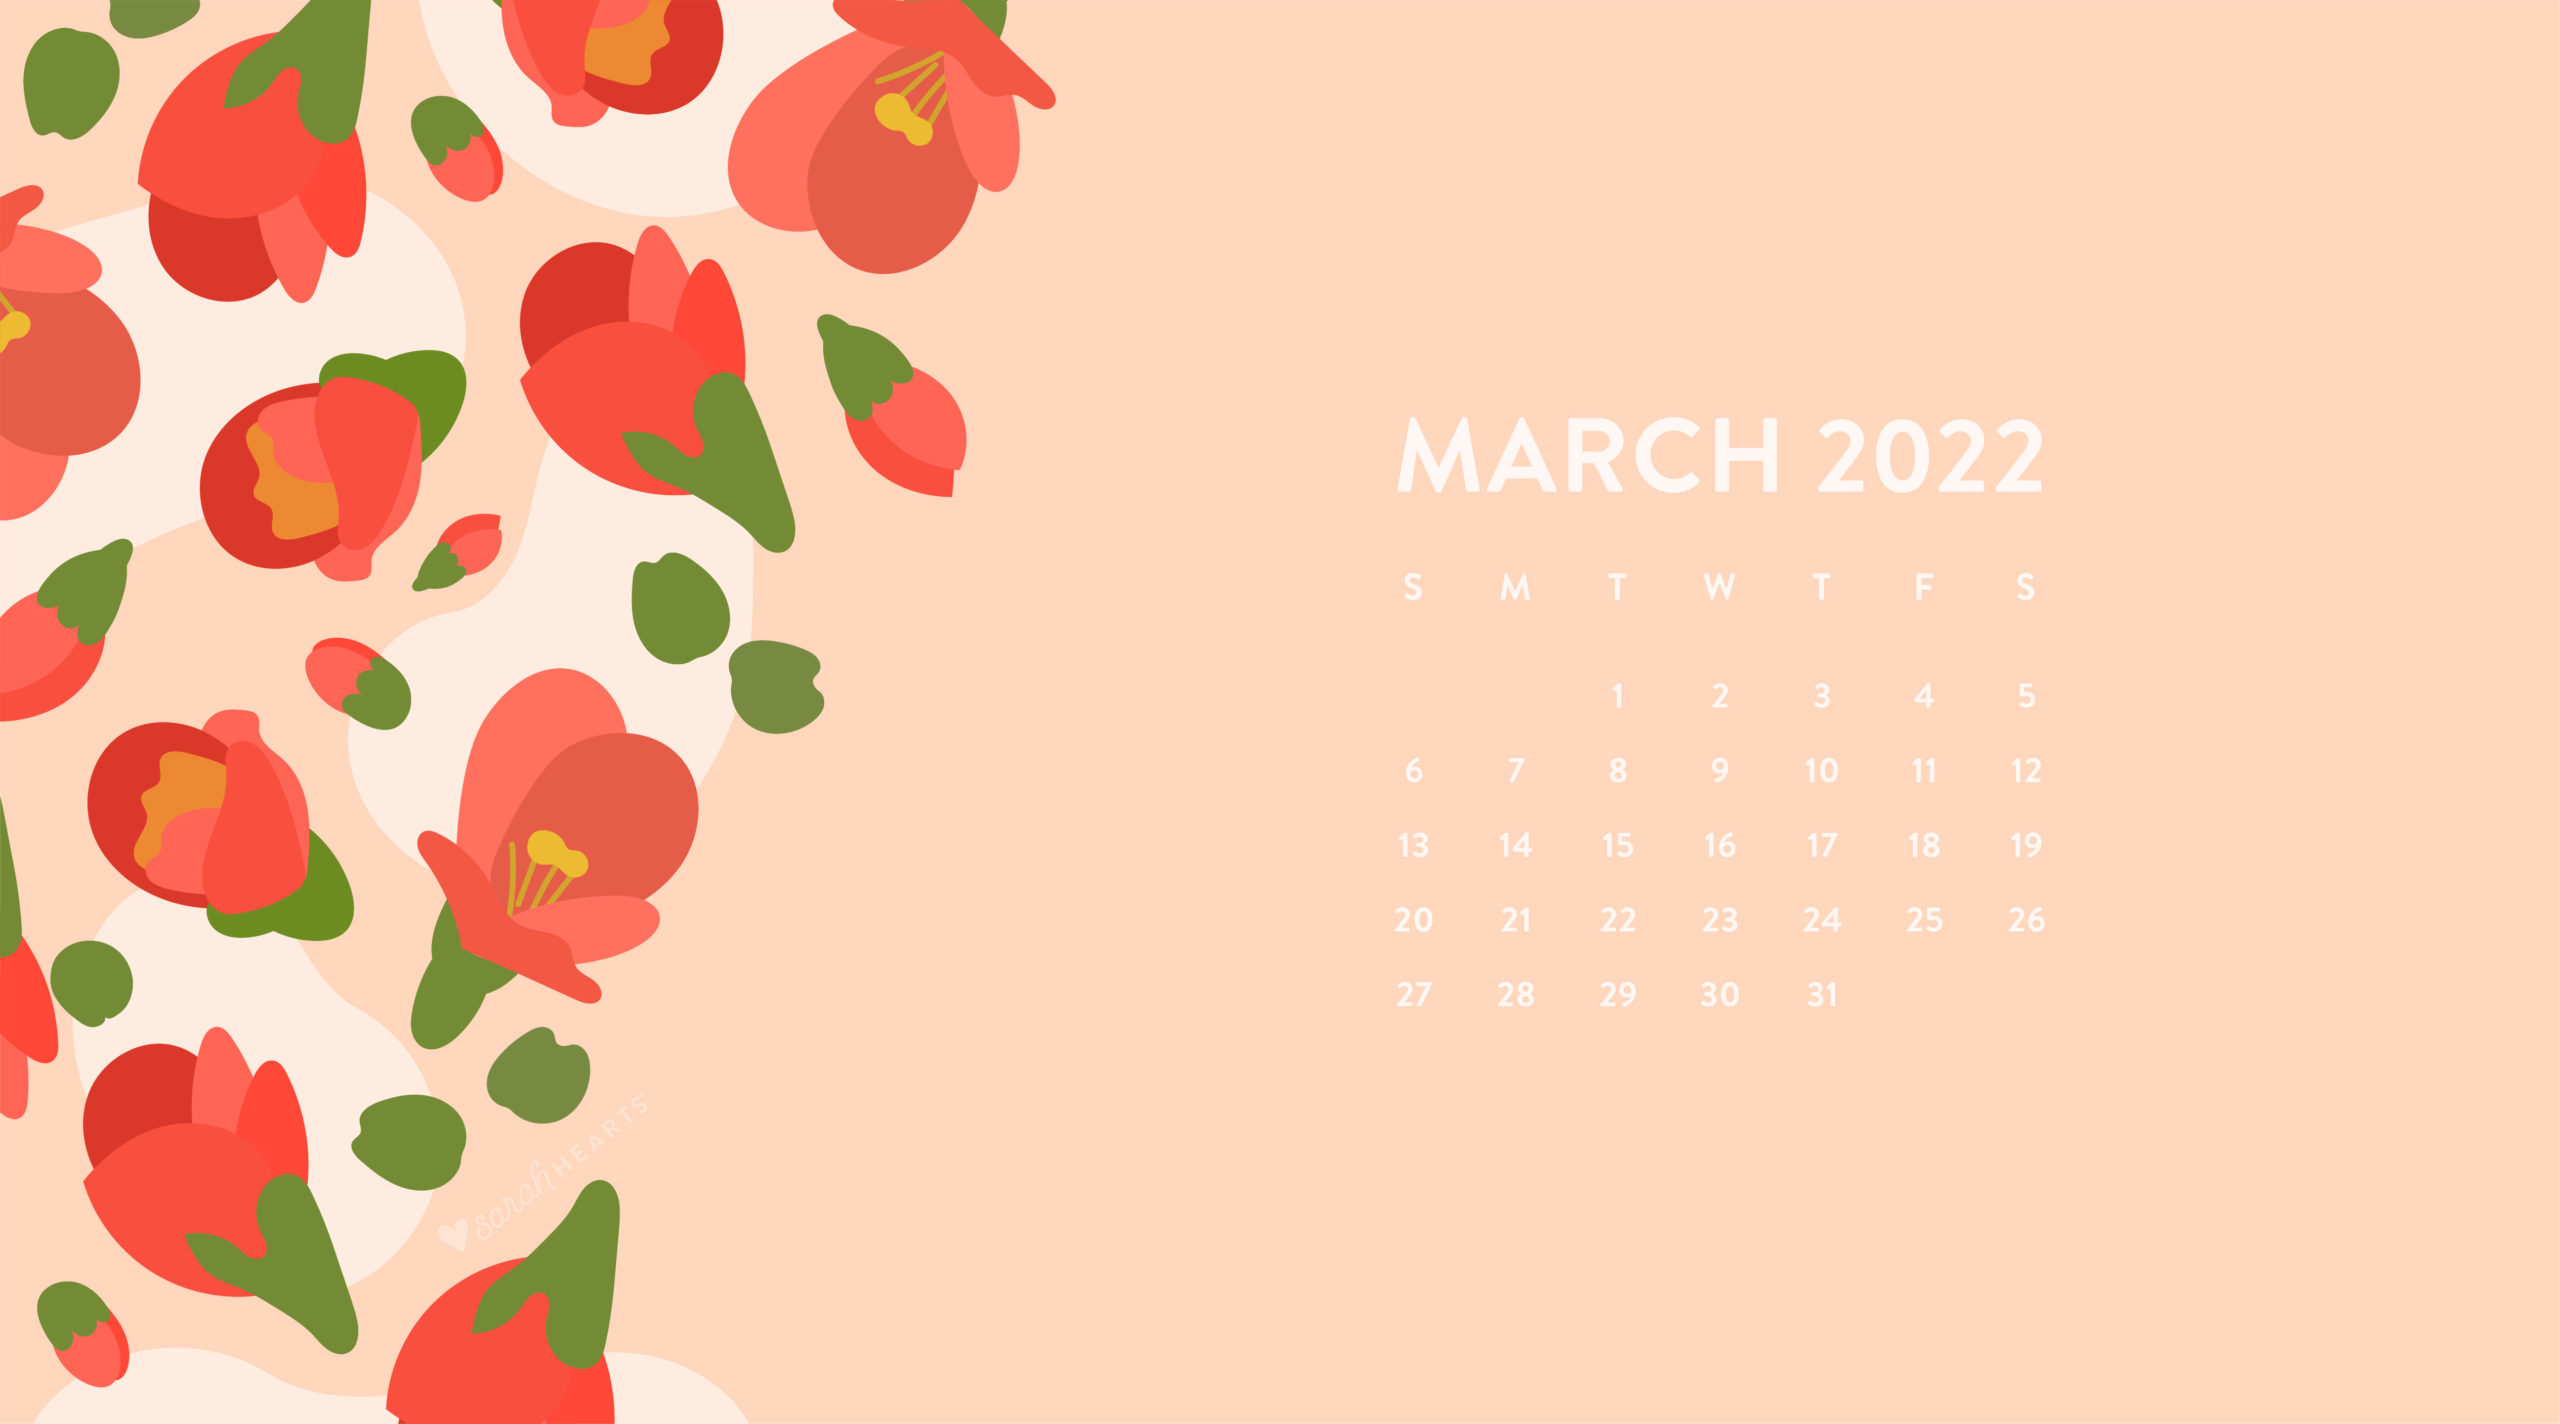 March 2022 Calendar Wallpaper March 2022 Calendar Wallpaper - Sarah Hearts